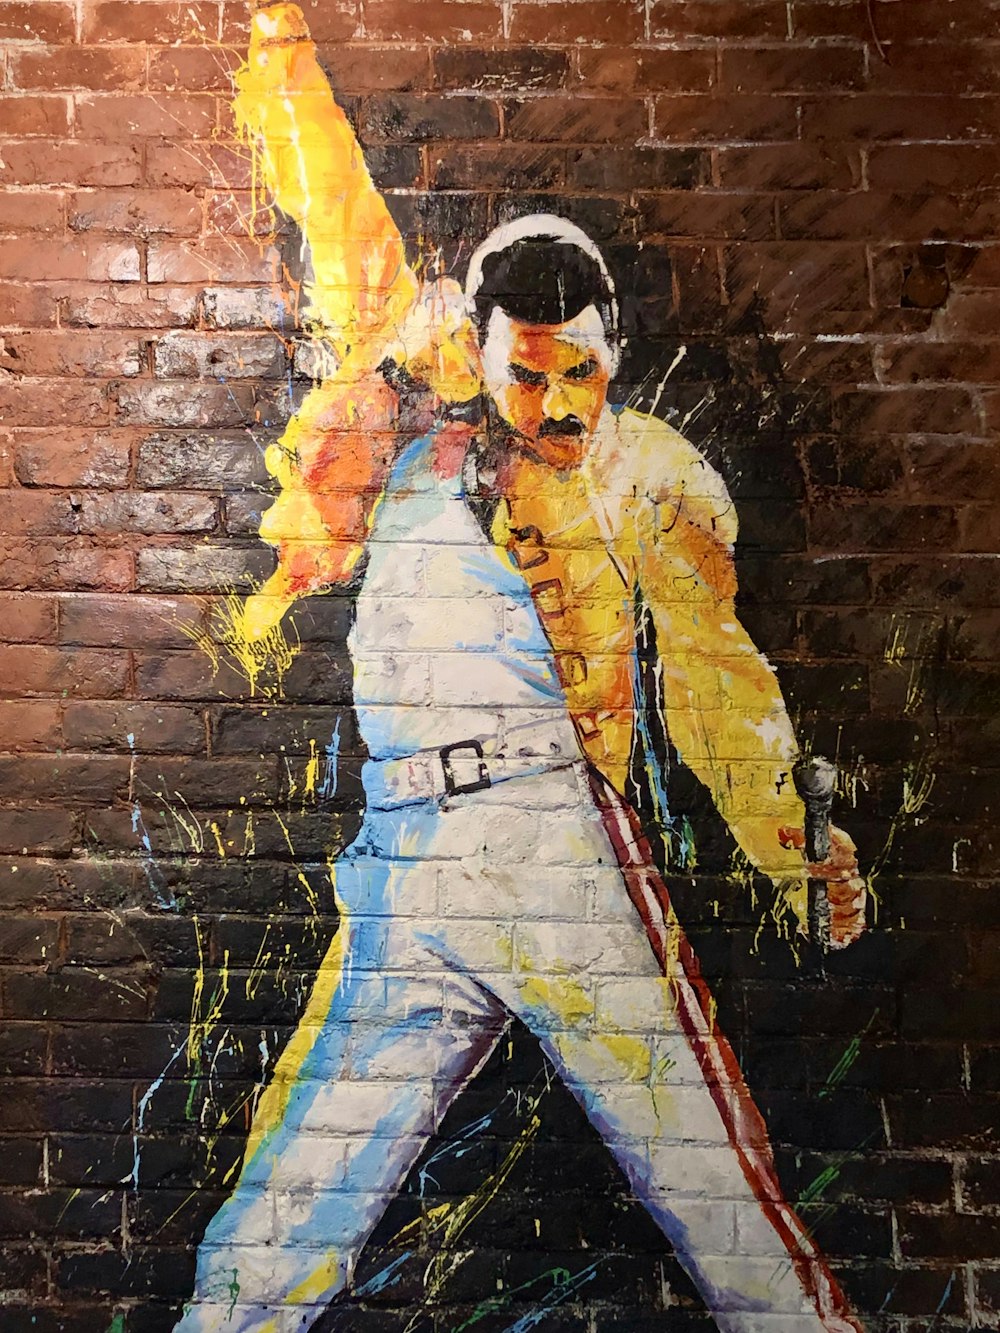 Freddie Mercury graffiti